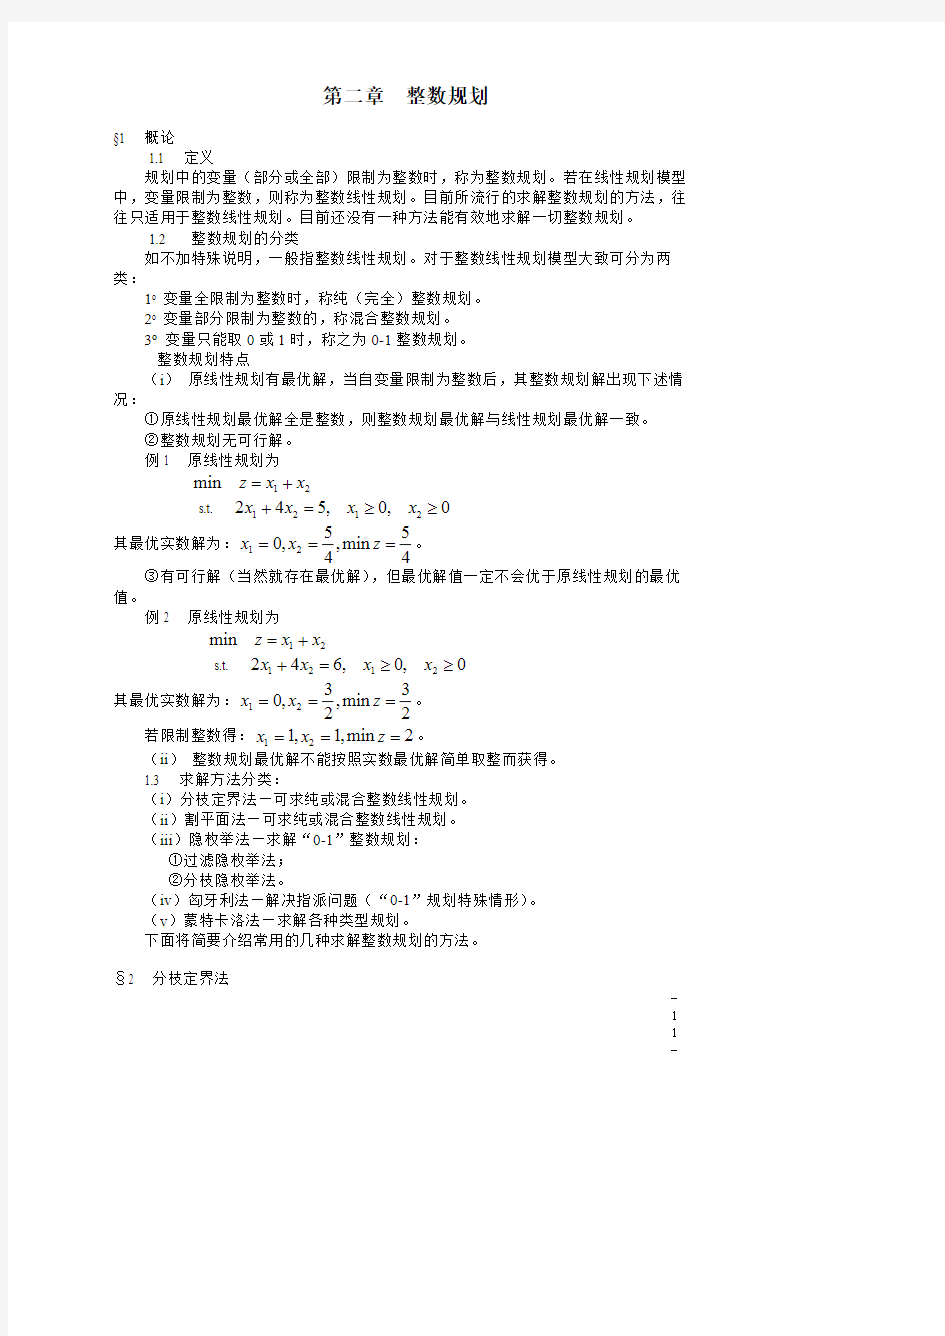 浙江大学 数学建模第二章  整数规划